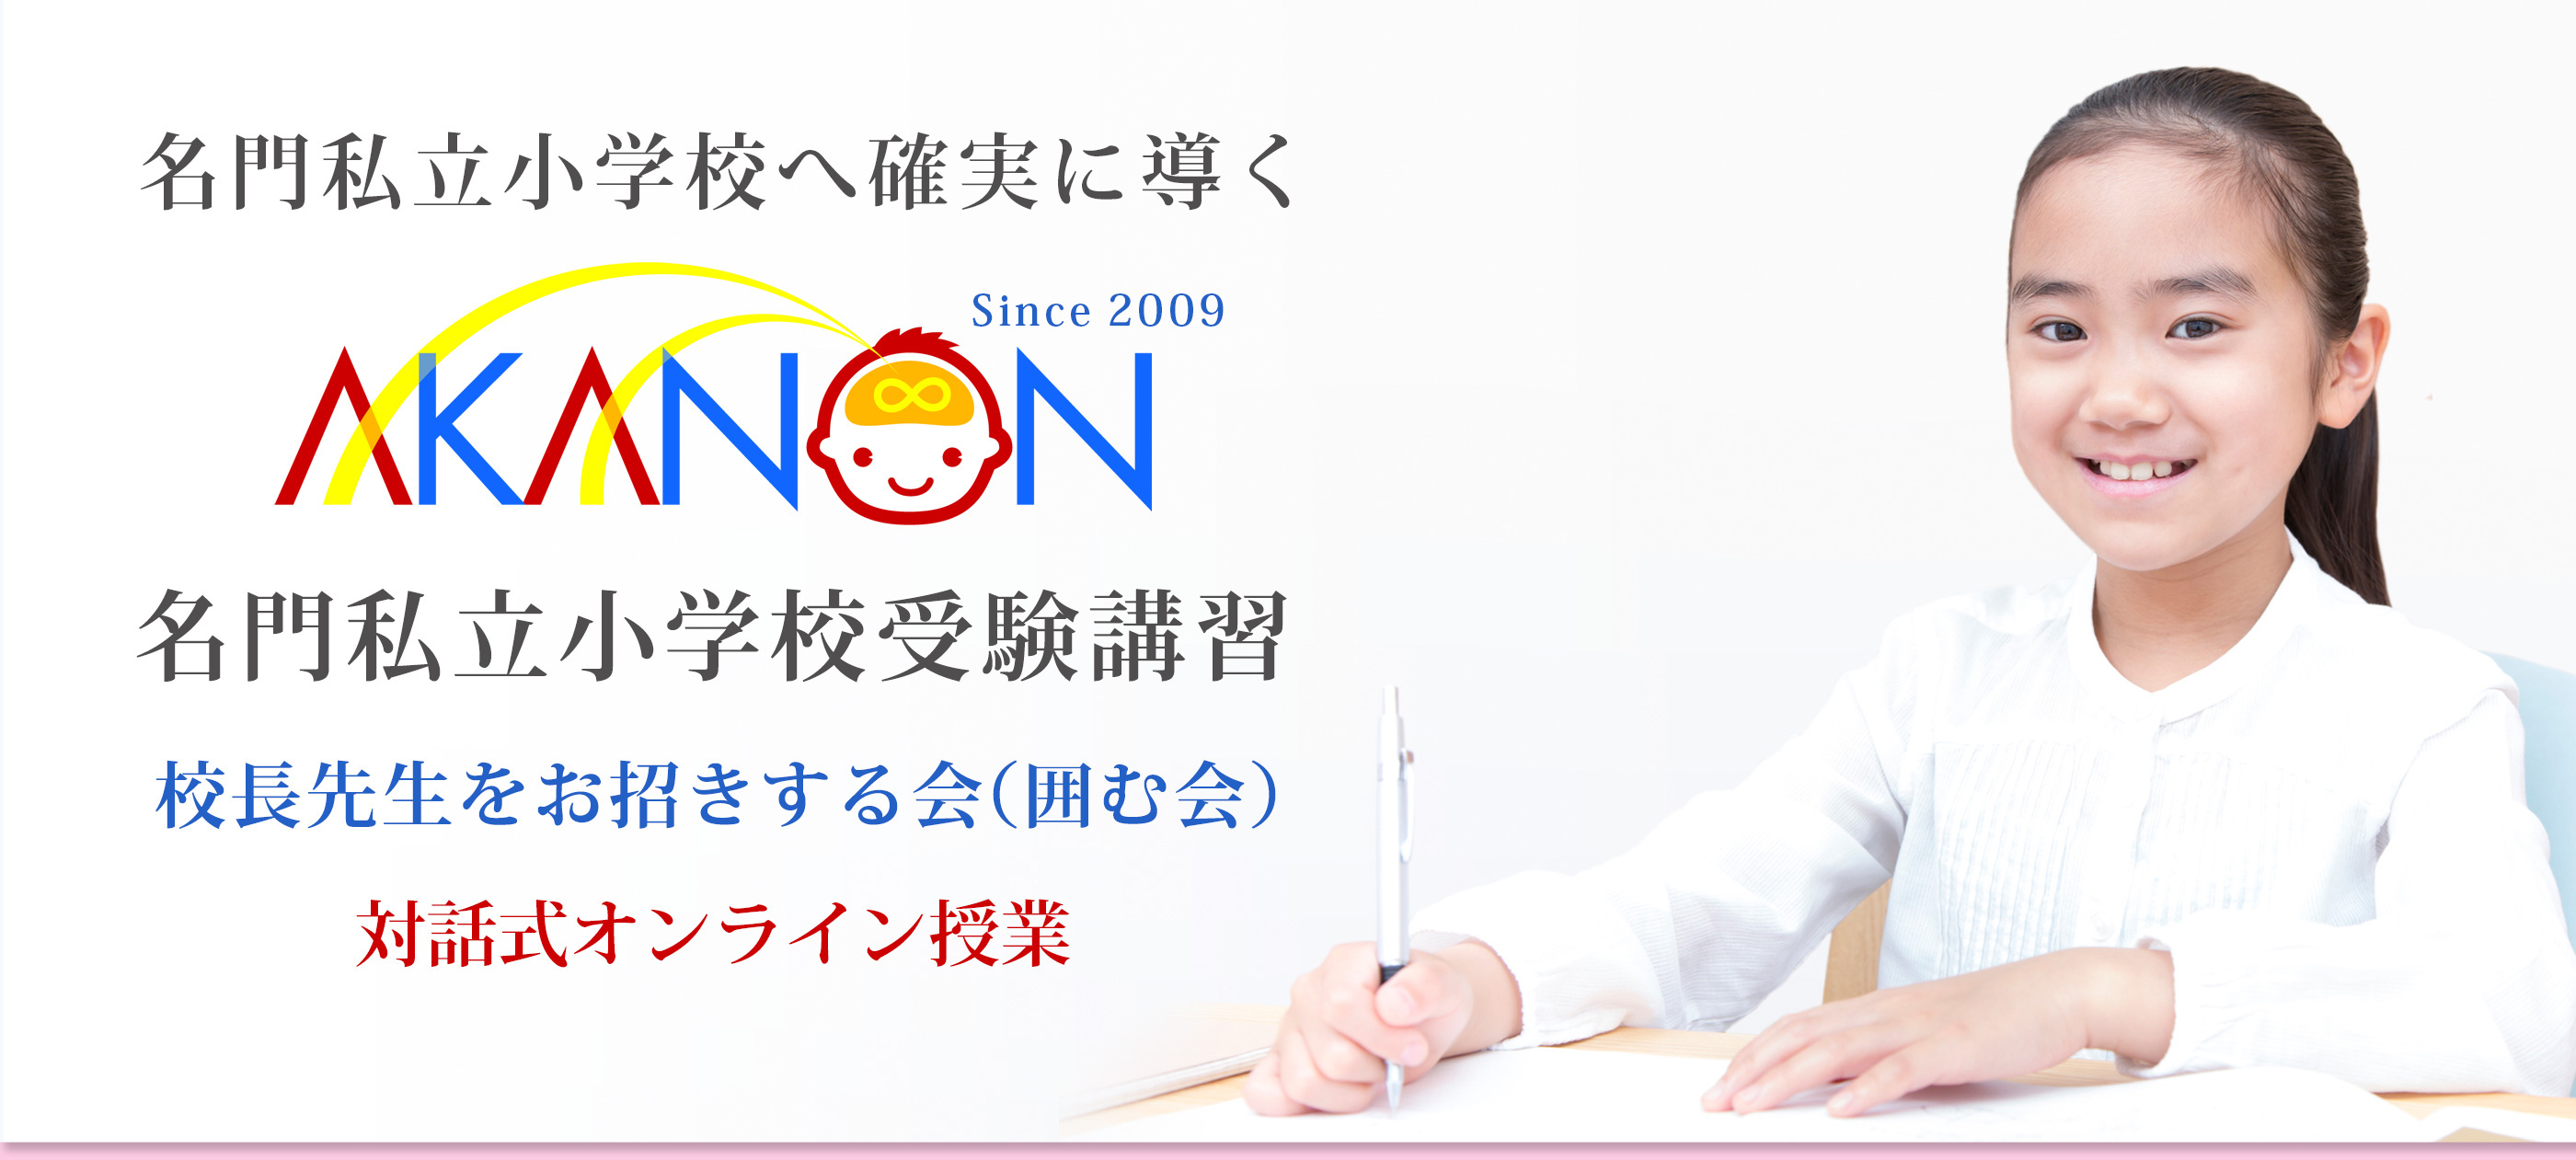 東京で小学校受験合格率が高い Akanon あかのん 教室 合格対策講座